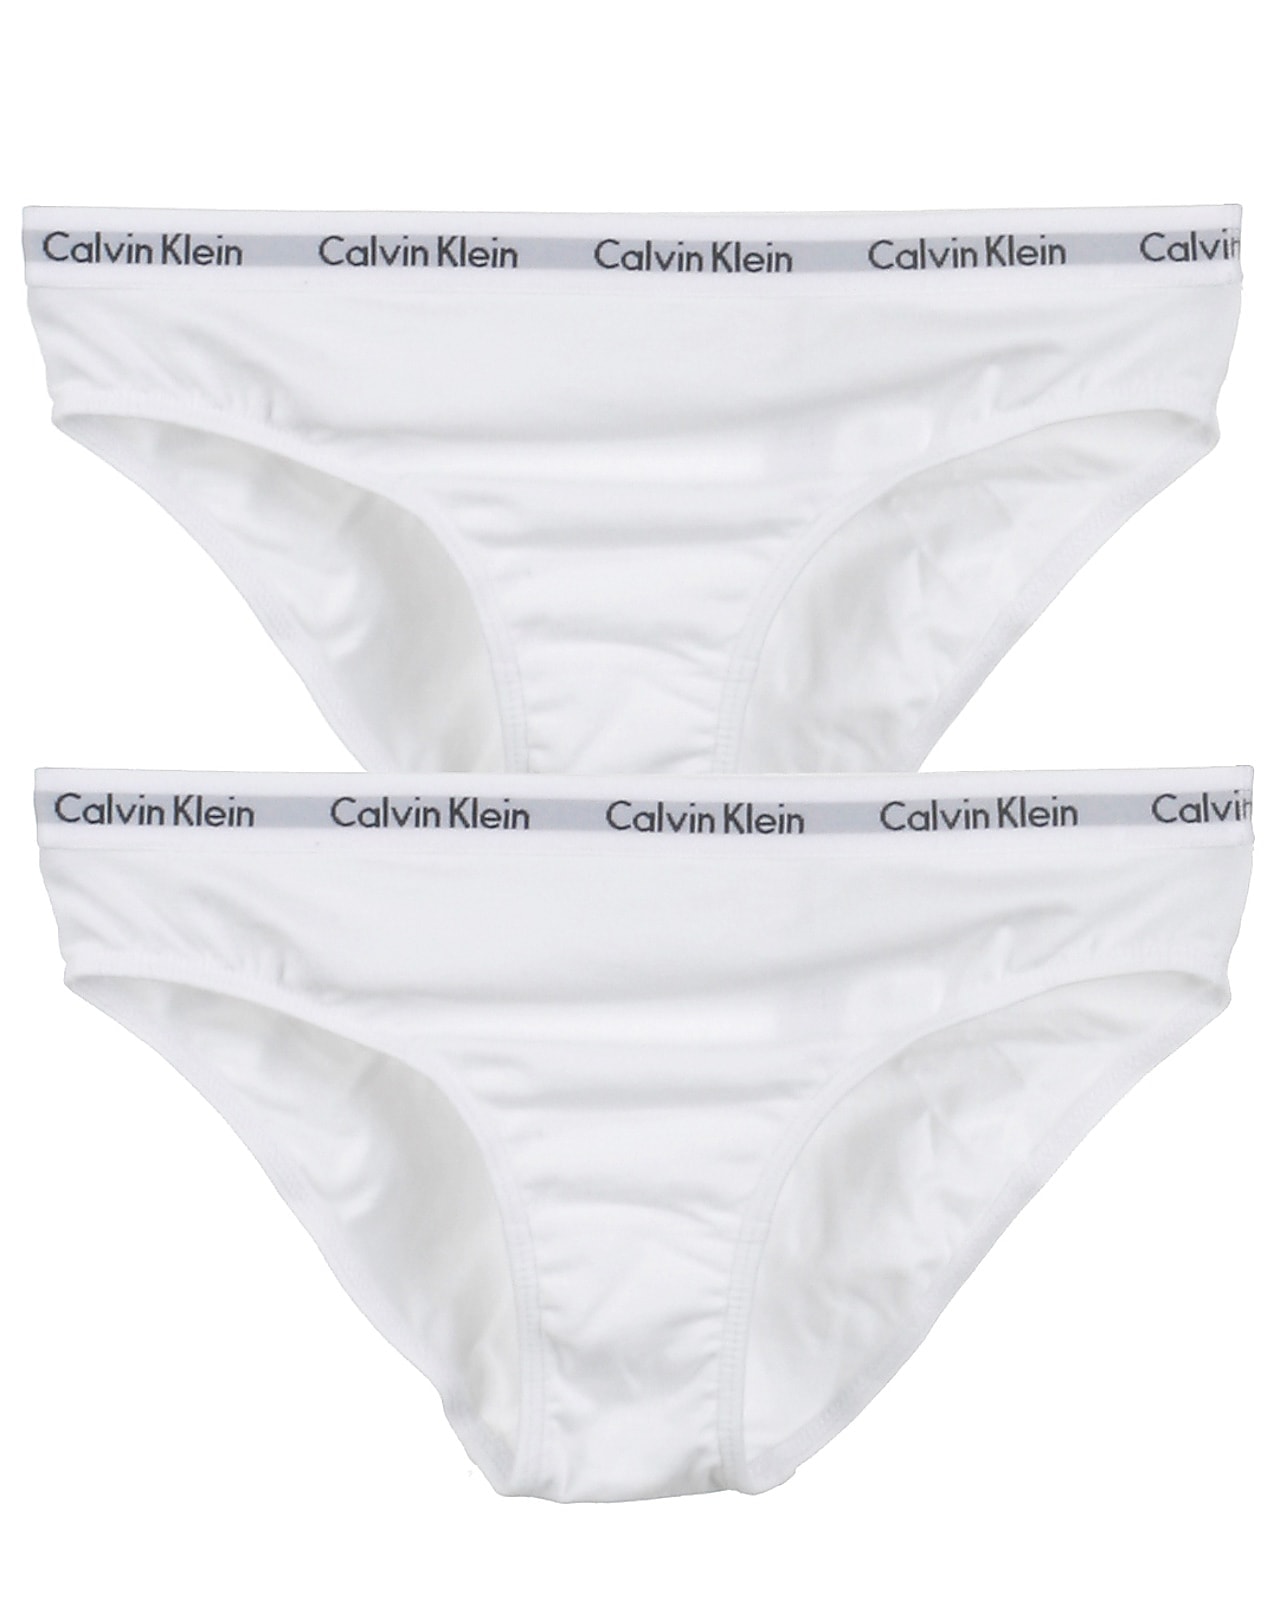 champion af befolkning Calvin Klein 2-pak trusser, Culotte, white. Lækre kvalitetsmærker til børn,  tweens, teens og voksne